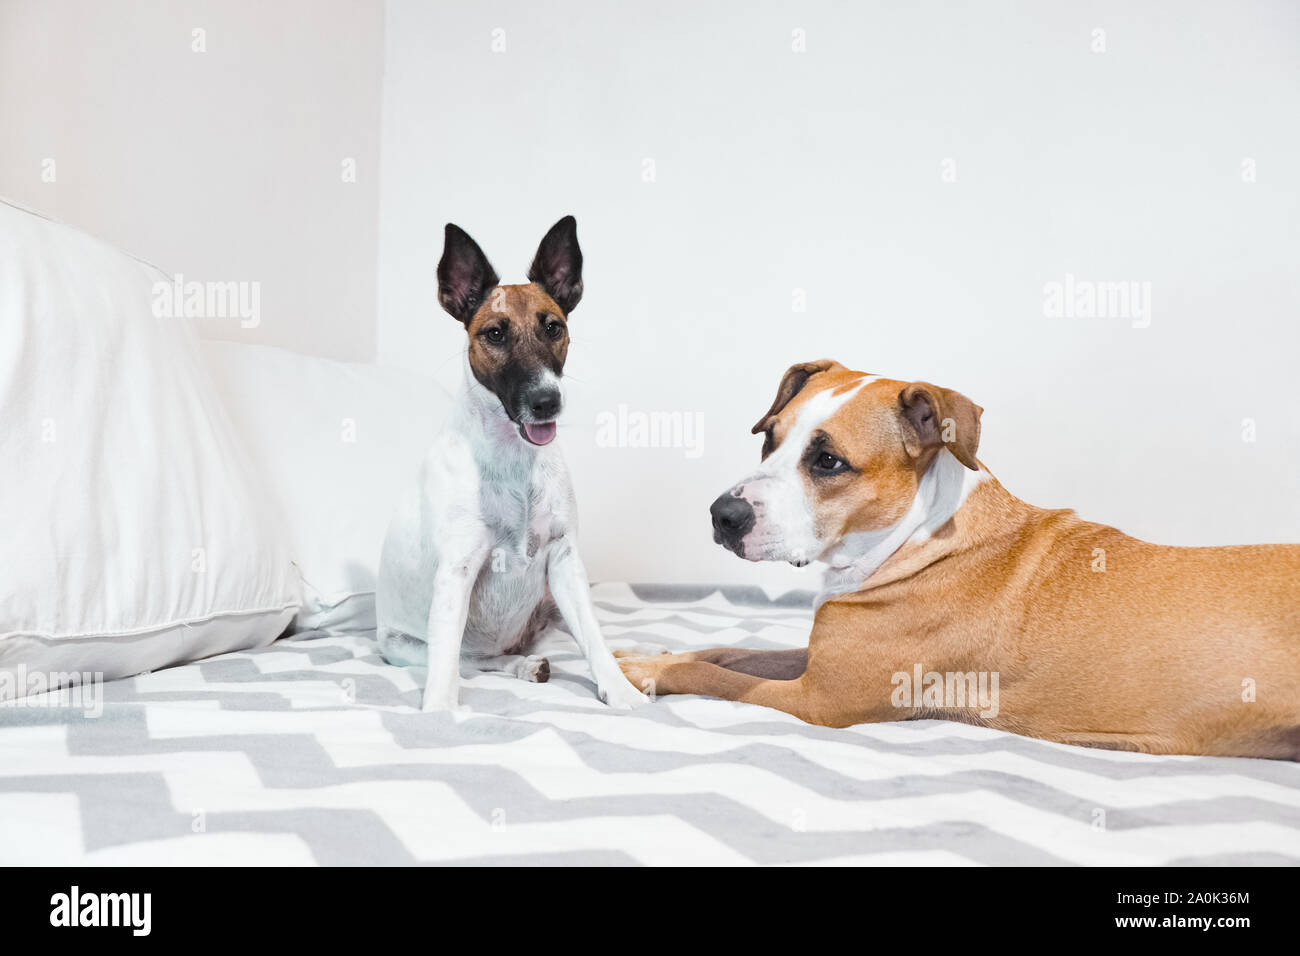 Deux jeunes chiens excités jouant sur lit dans une chambre bien éclairée. Concept d'amitié entre deux animaux de compagnie, chien de travail ou de sommeil à la fin de semaine. Banque D'Images